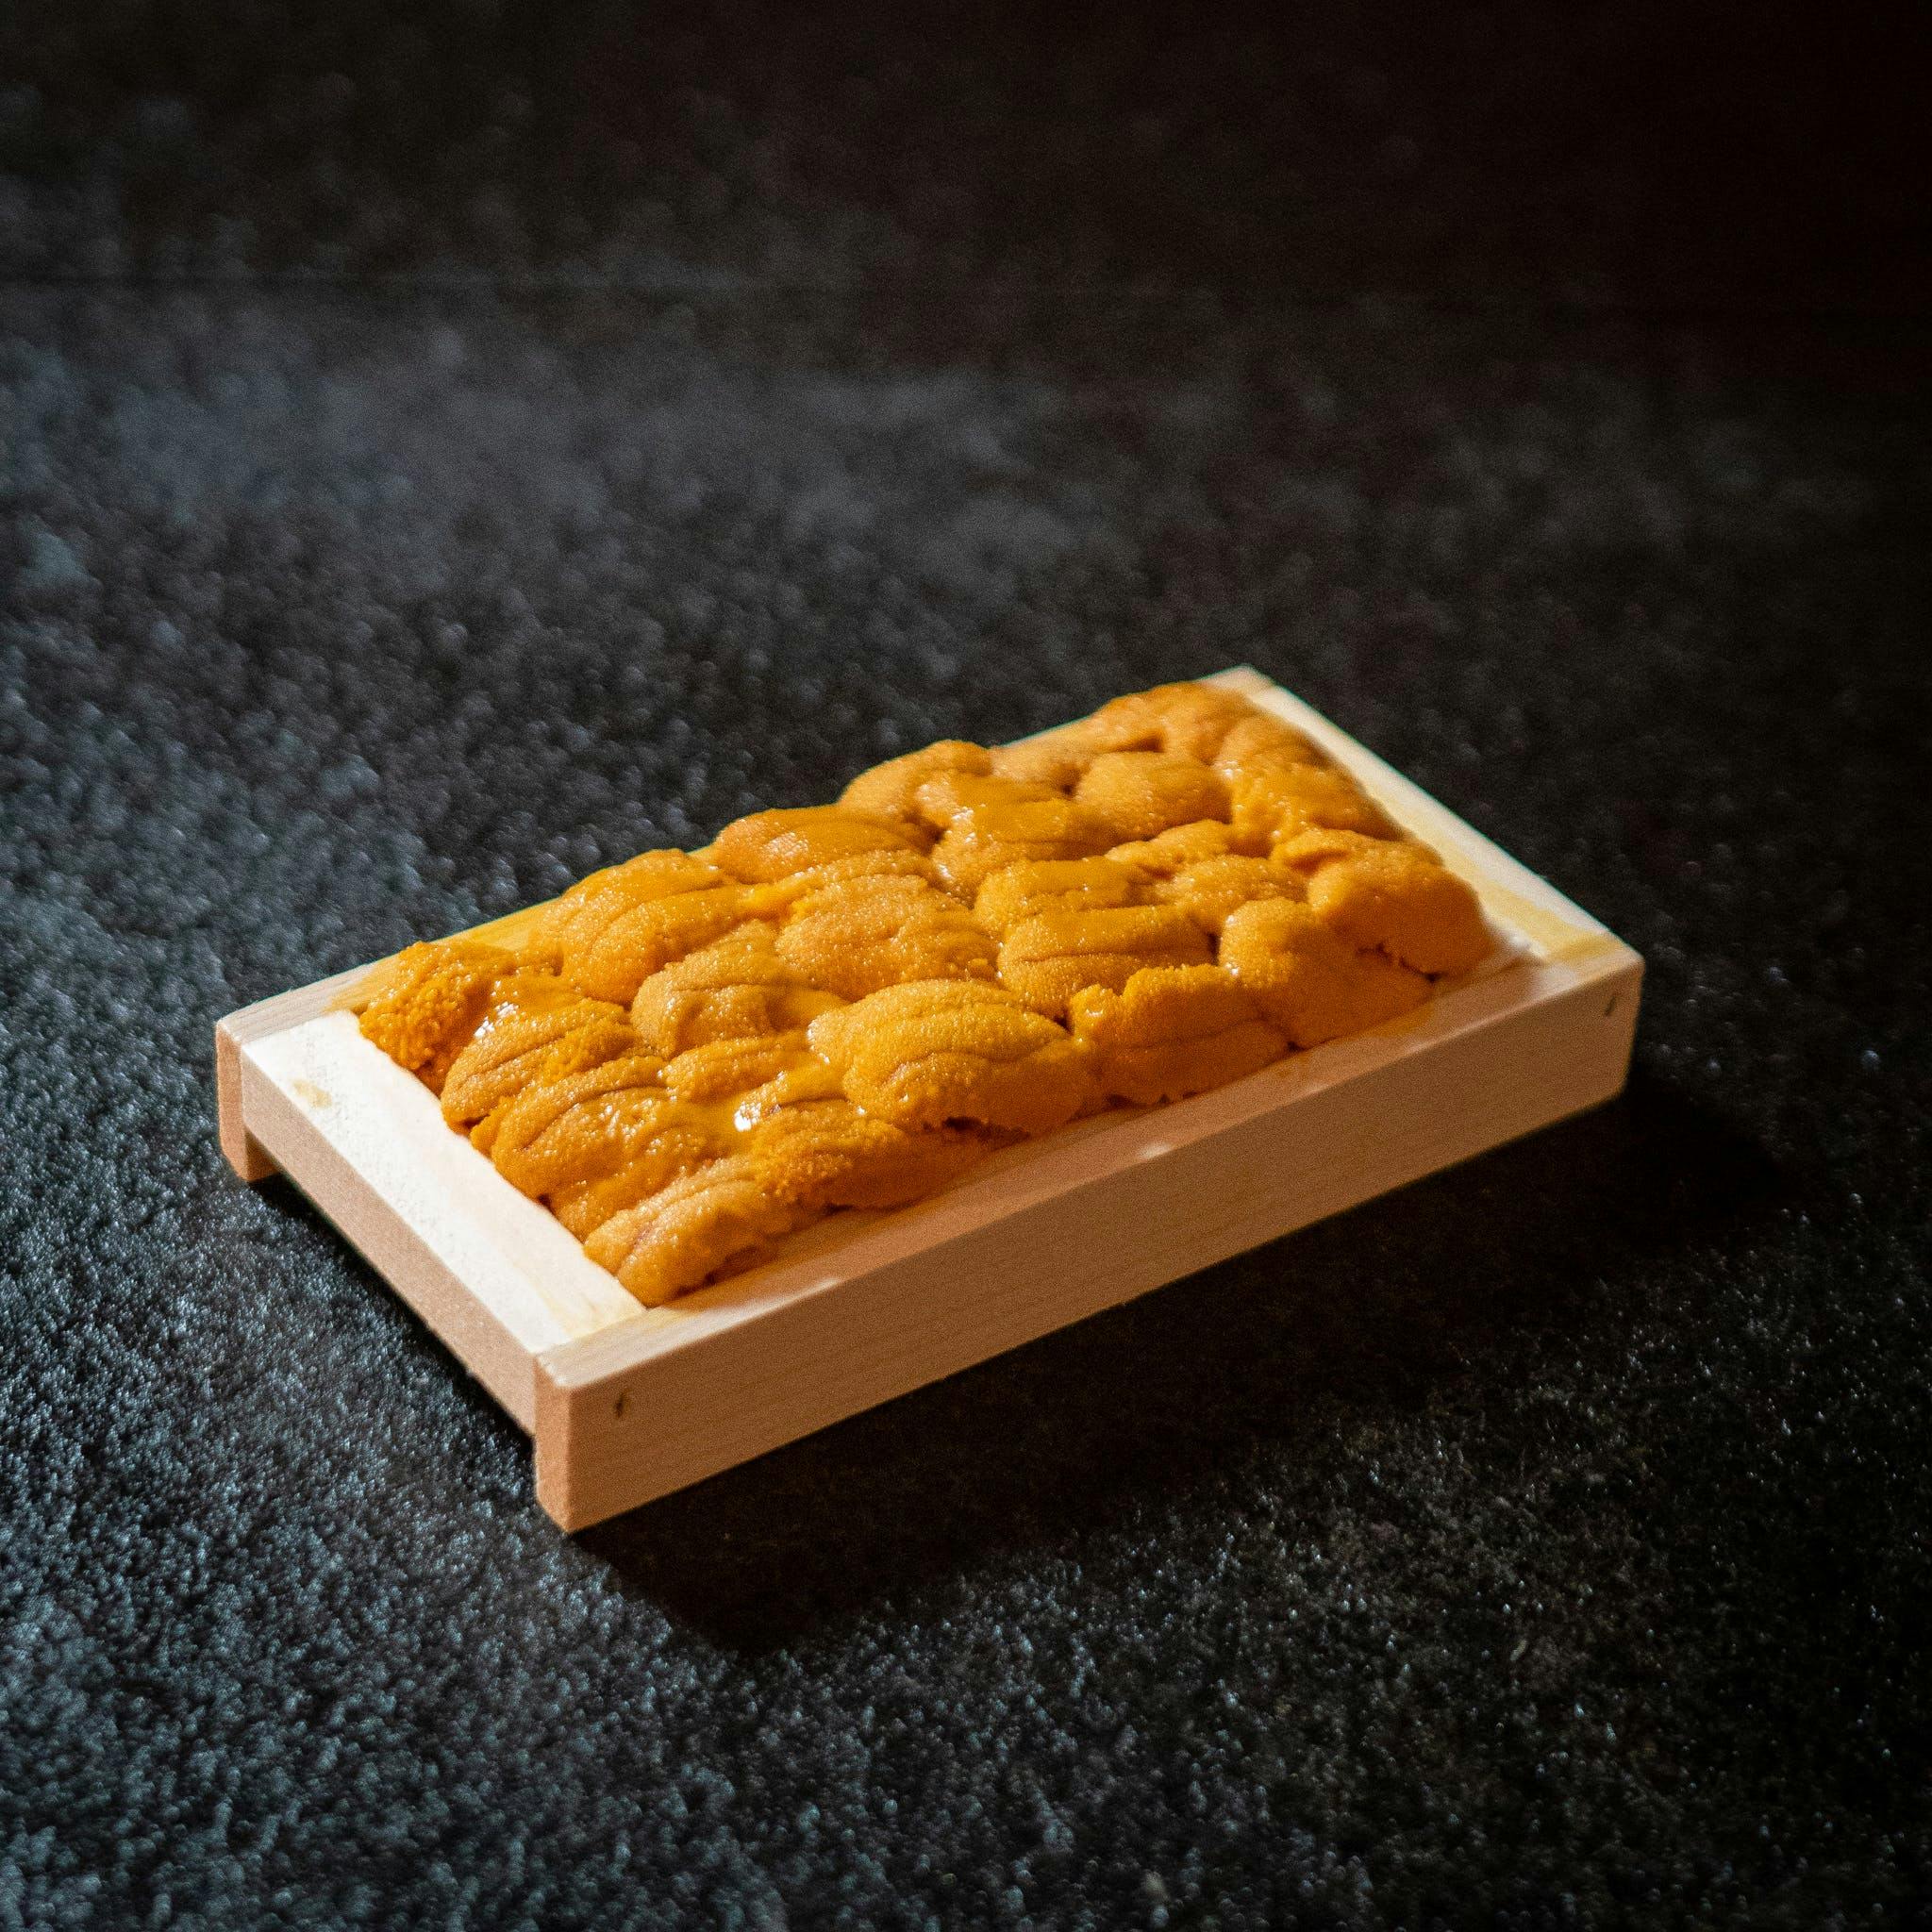 Japanese Sushi Kit DIY Cooking Set (2 Serving) 🍣Ingredient